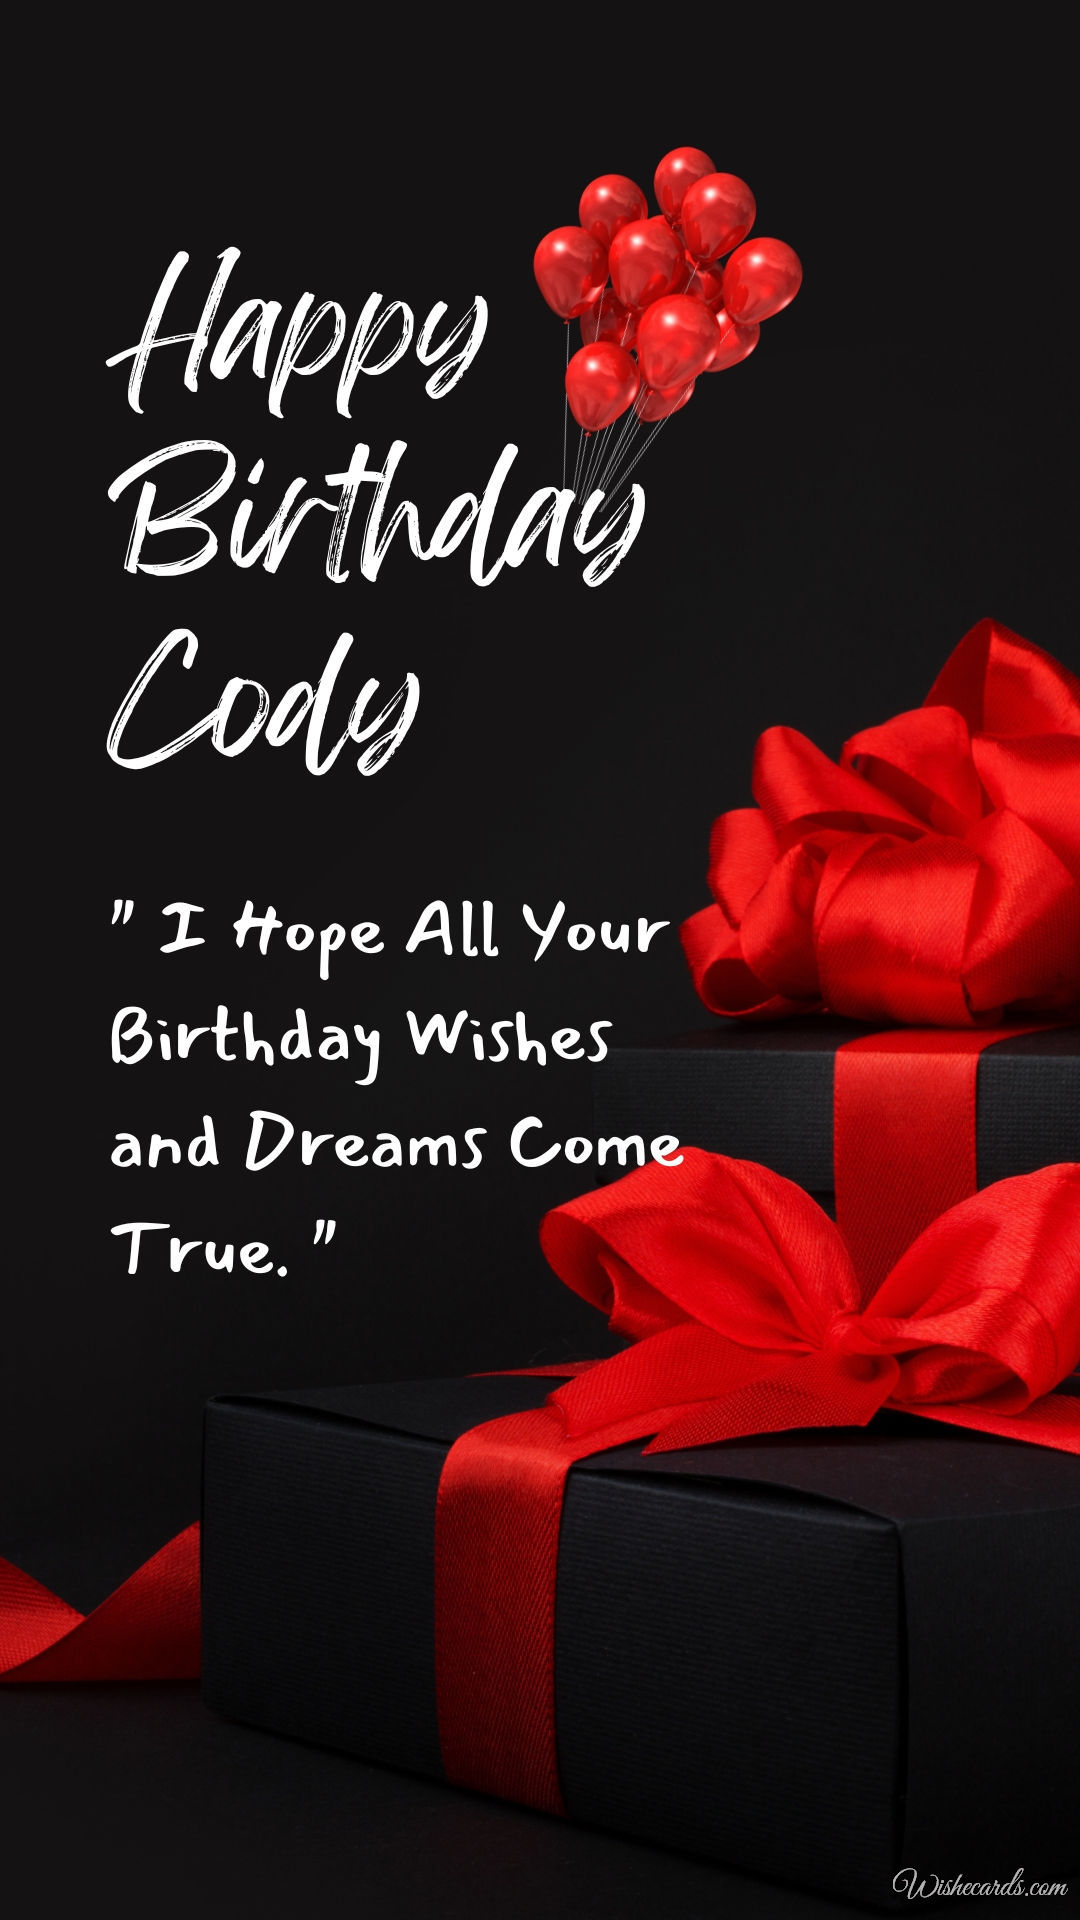 Happy Birthday Cody